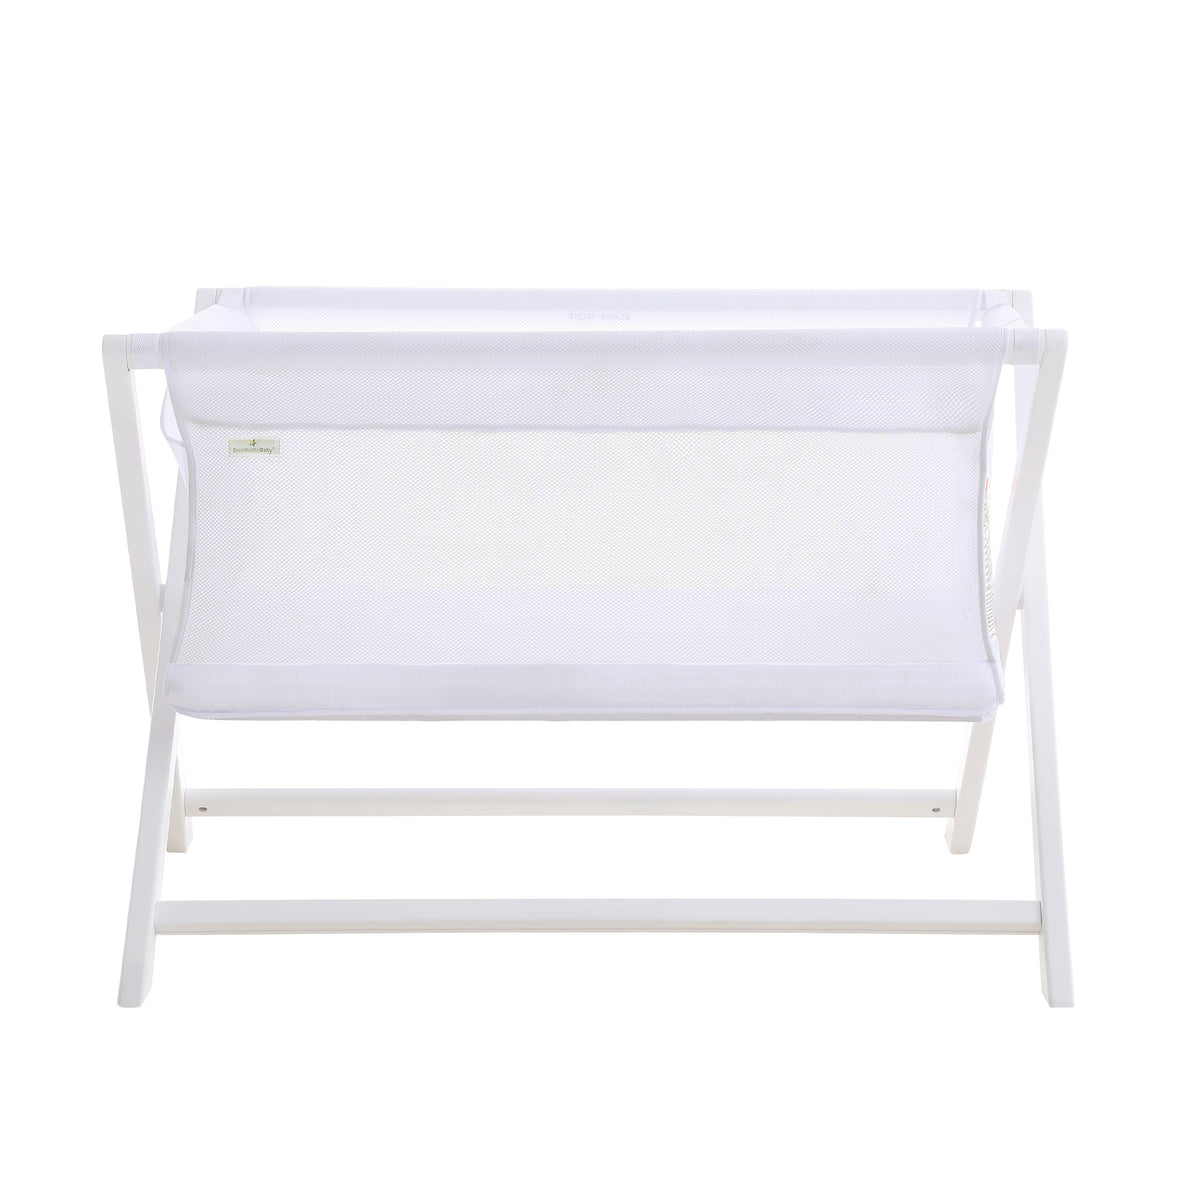 Breathable™ Mesh Crib RailGuard™ Teething Cover, White, 27” Short